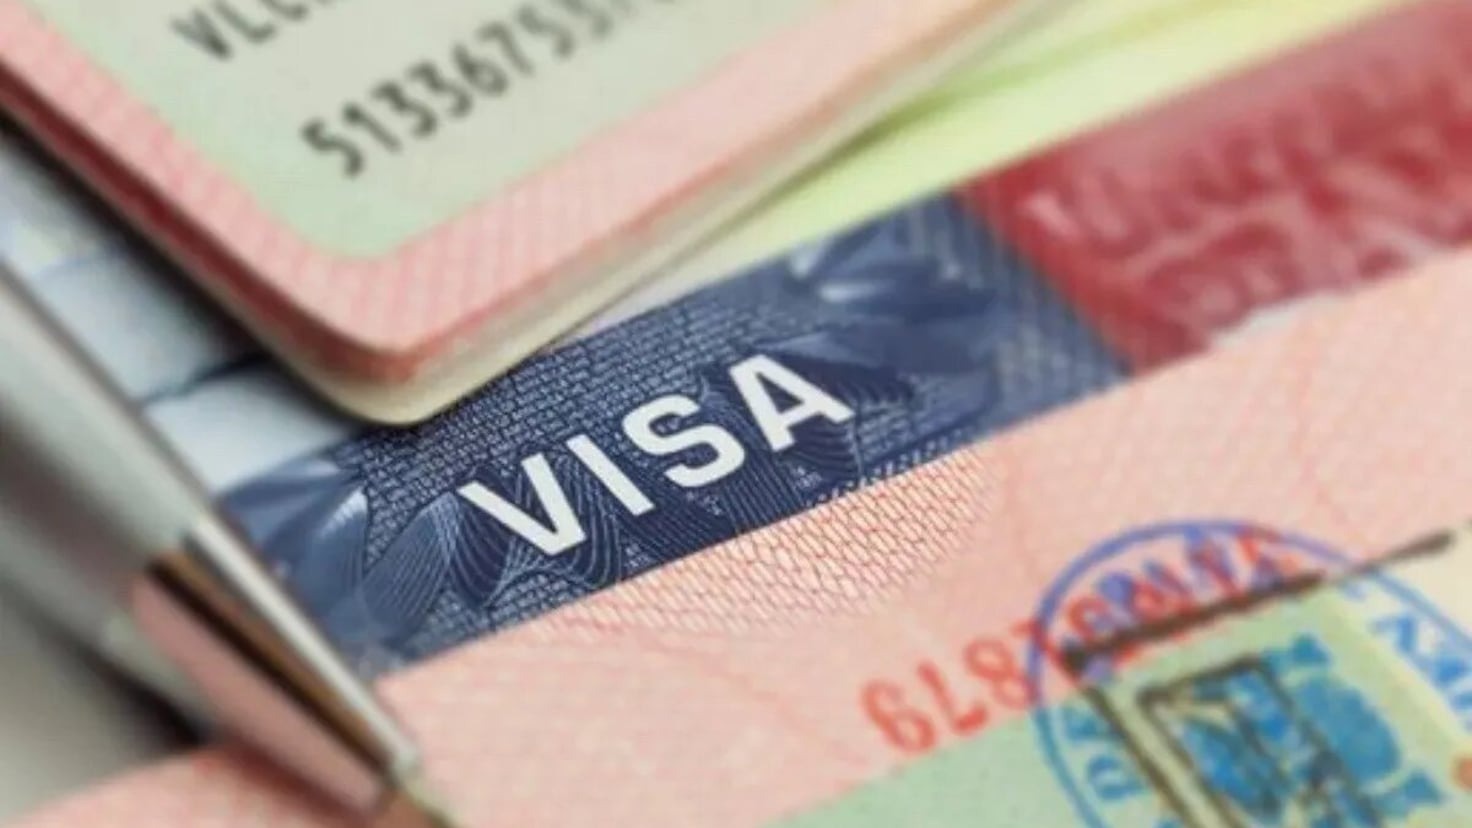 EEUU: Los pasos a seguir para que adultos mayores no tengan que asistir a la entrevista para la visa